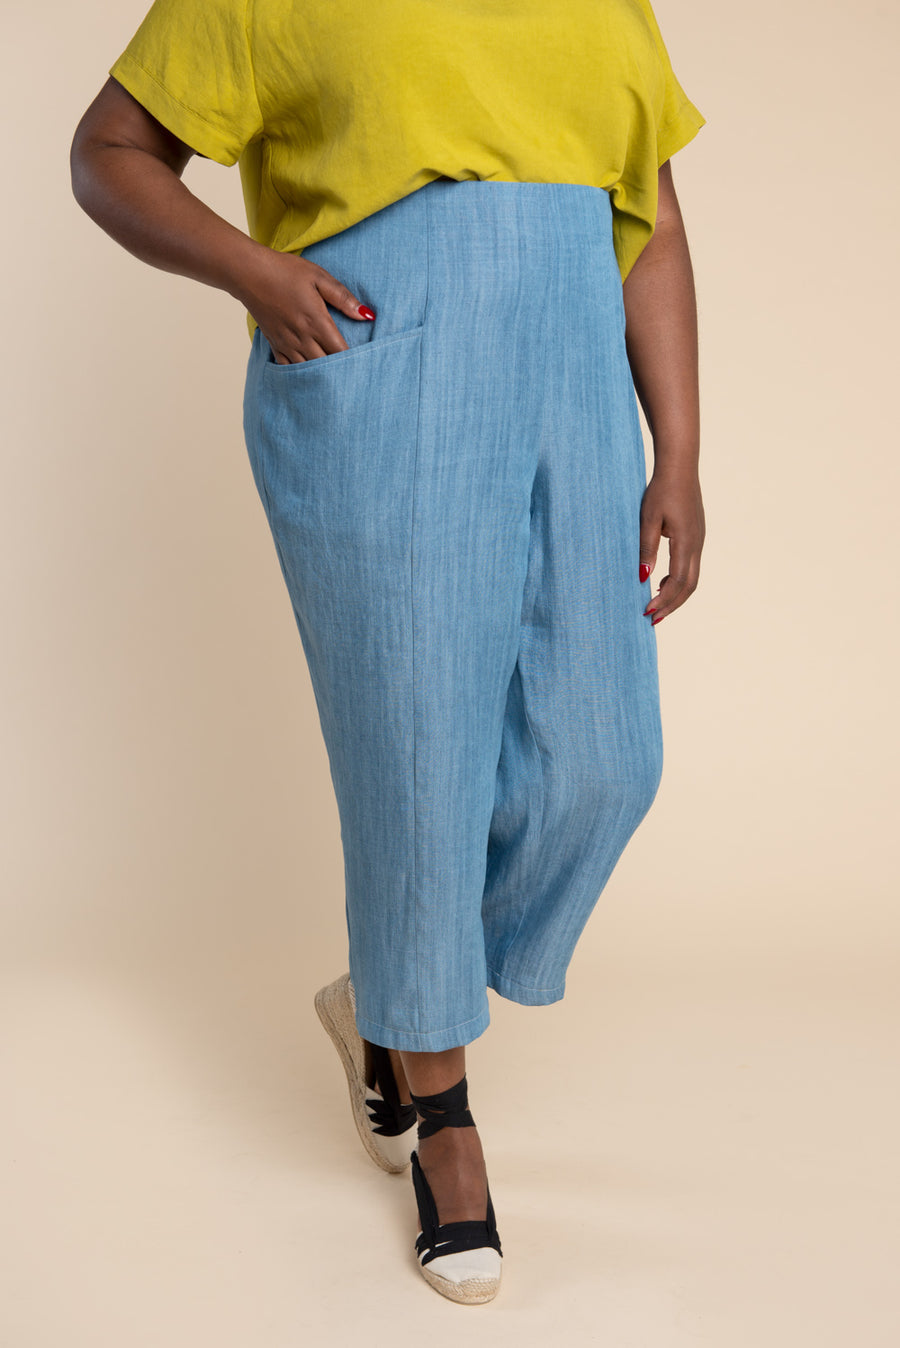 Pietra Shorts & Pants Pattern  Sewing Pattern – Closet Core Patterns